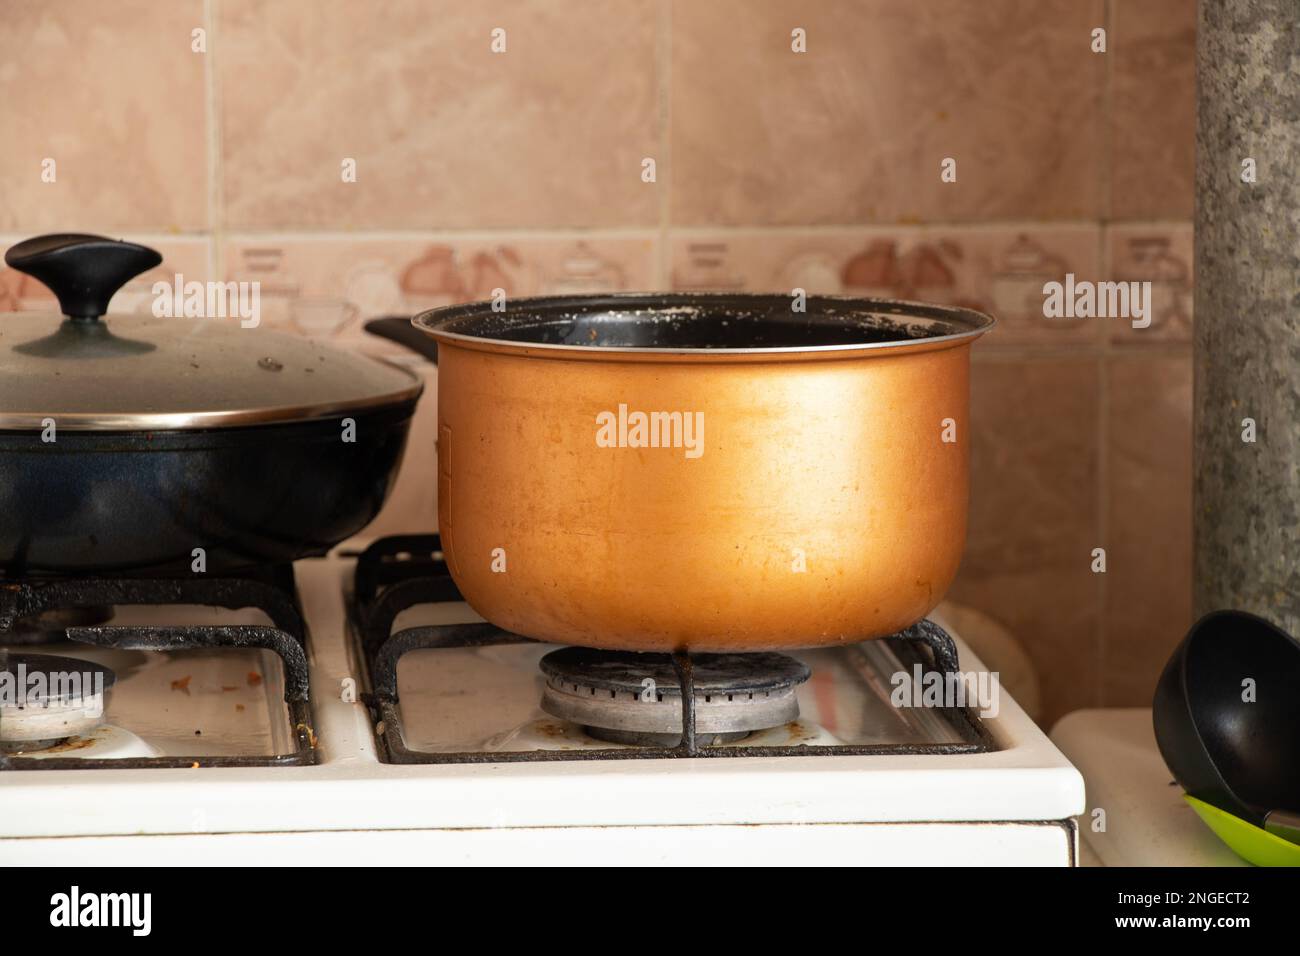 la poêle se trouve sur la cuisinière à gaz dans la cuisine de l'appartement, cuisine Banque D'Images